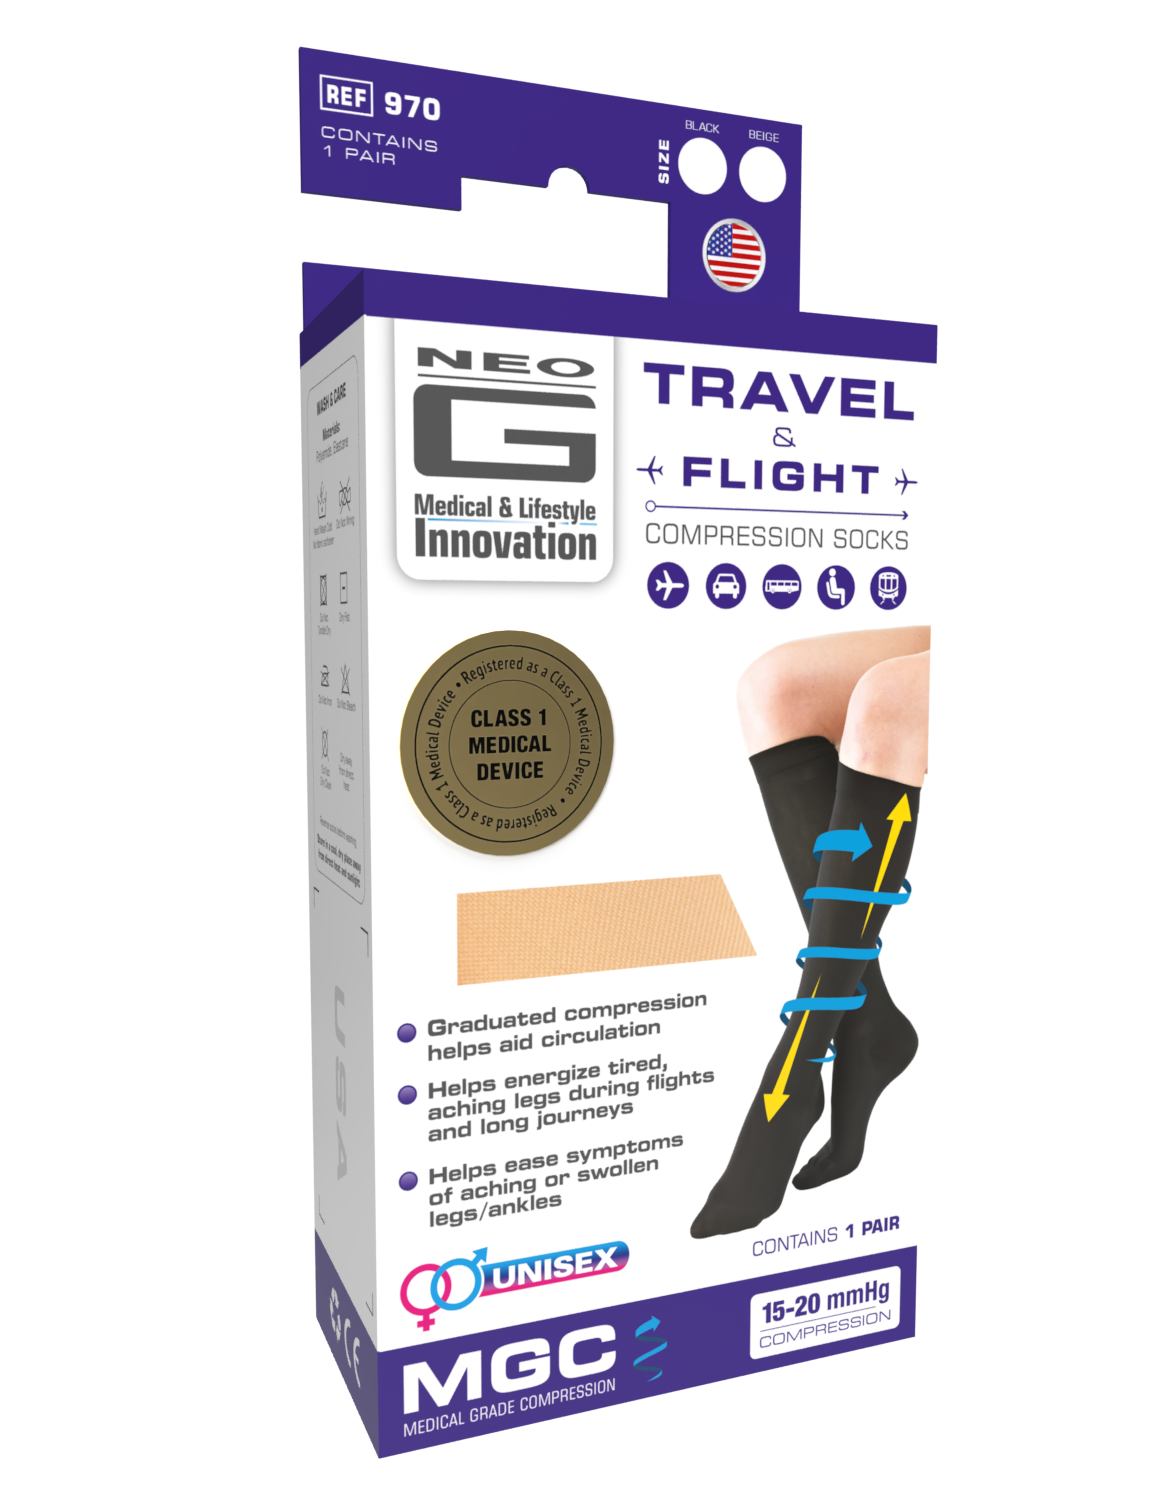 1 Pack Sockshop 40 Denier Compression DVT Flight and Travel Socks Size 5-8  US